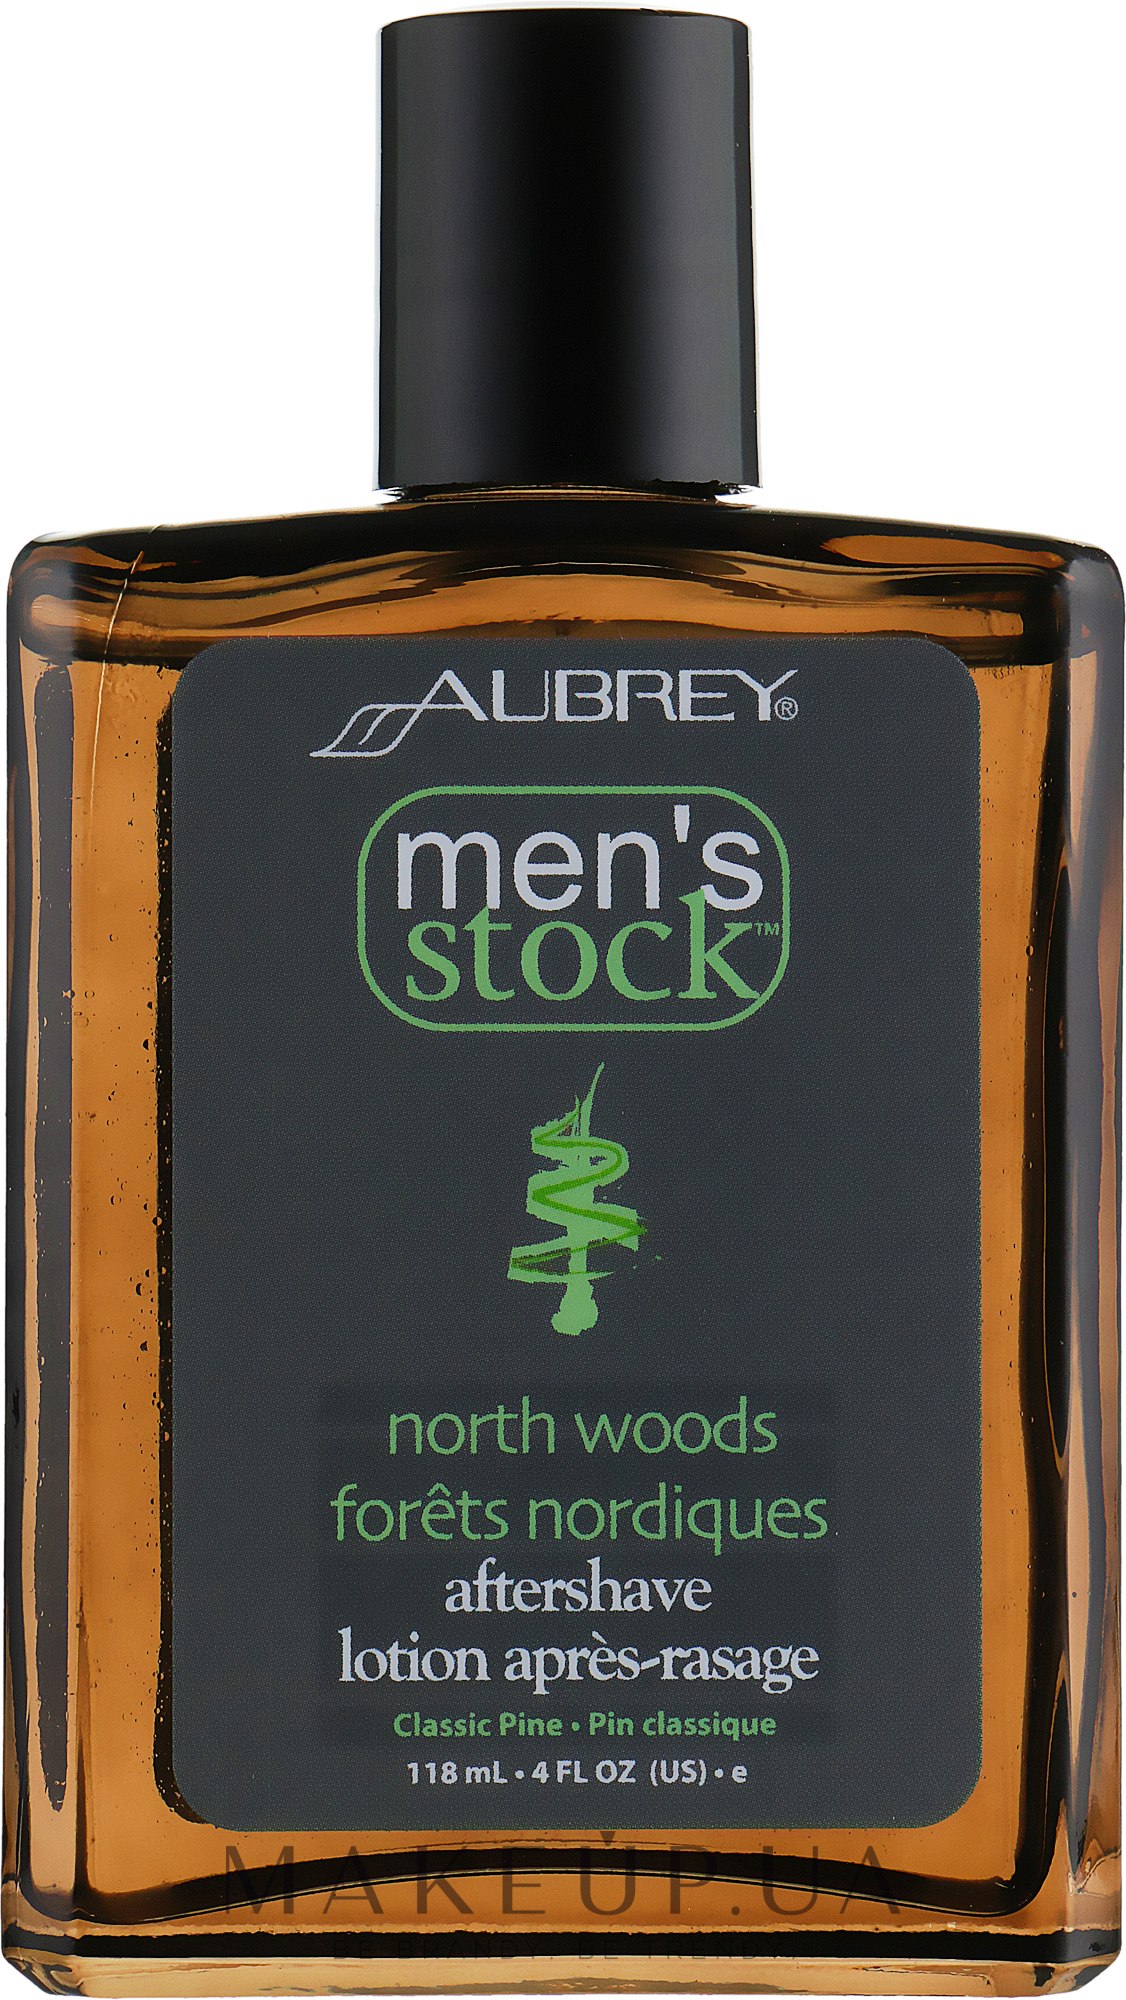 Aubrey organics men's stock крем для бритья